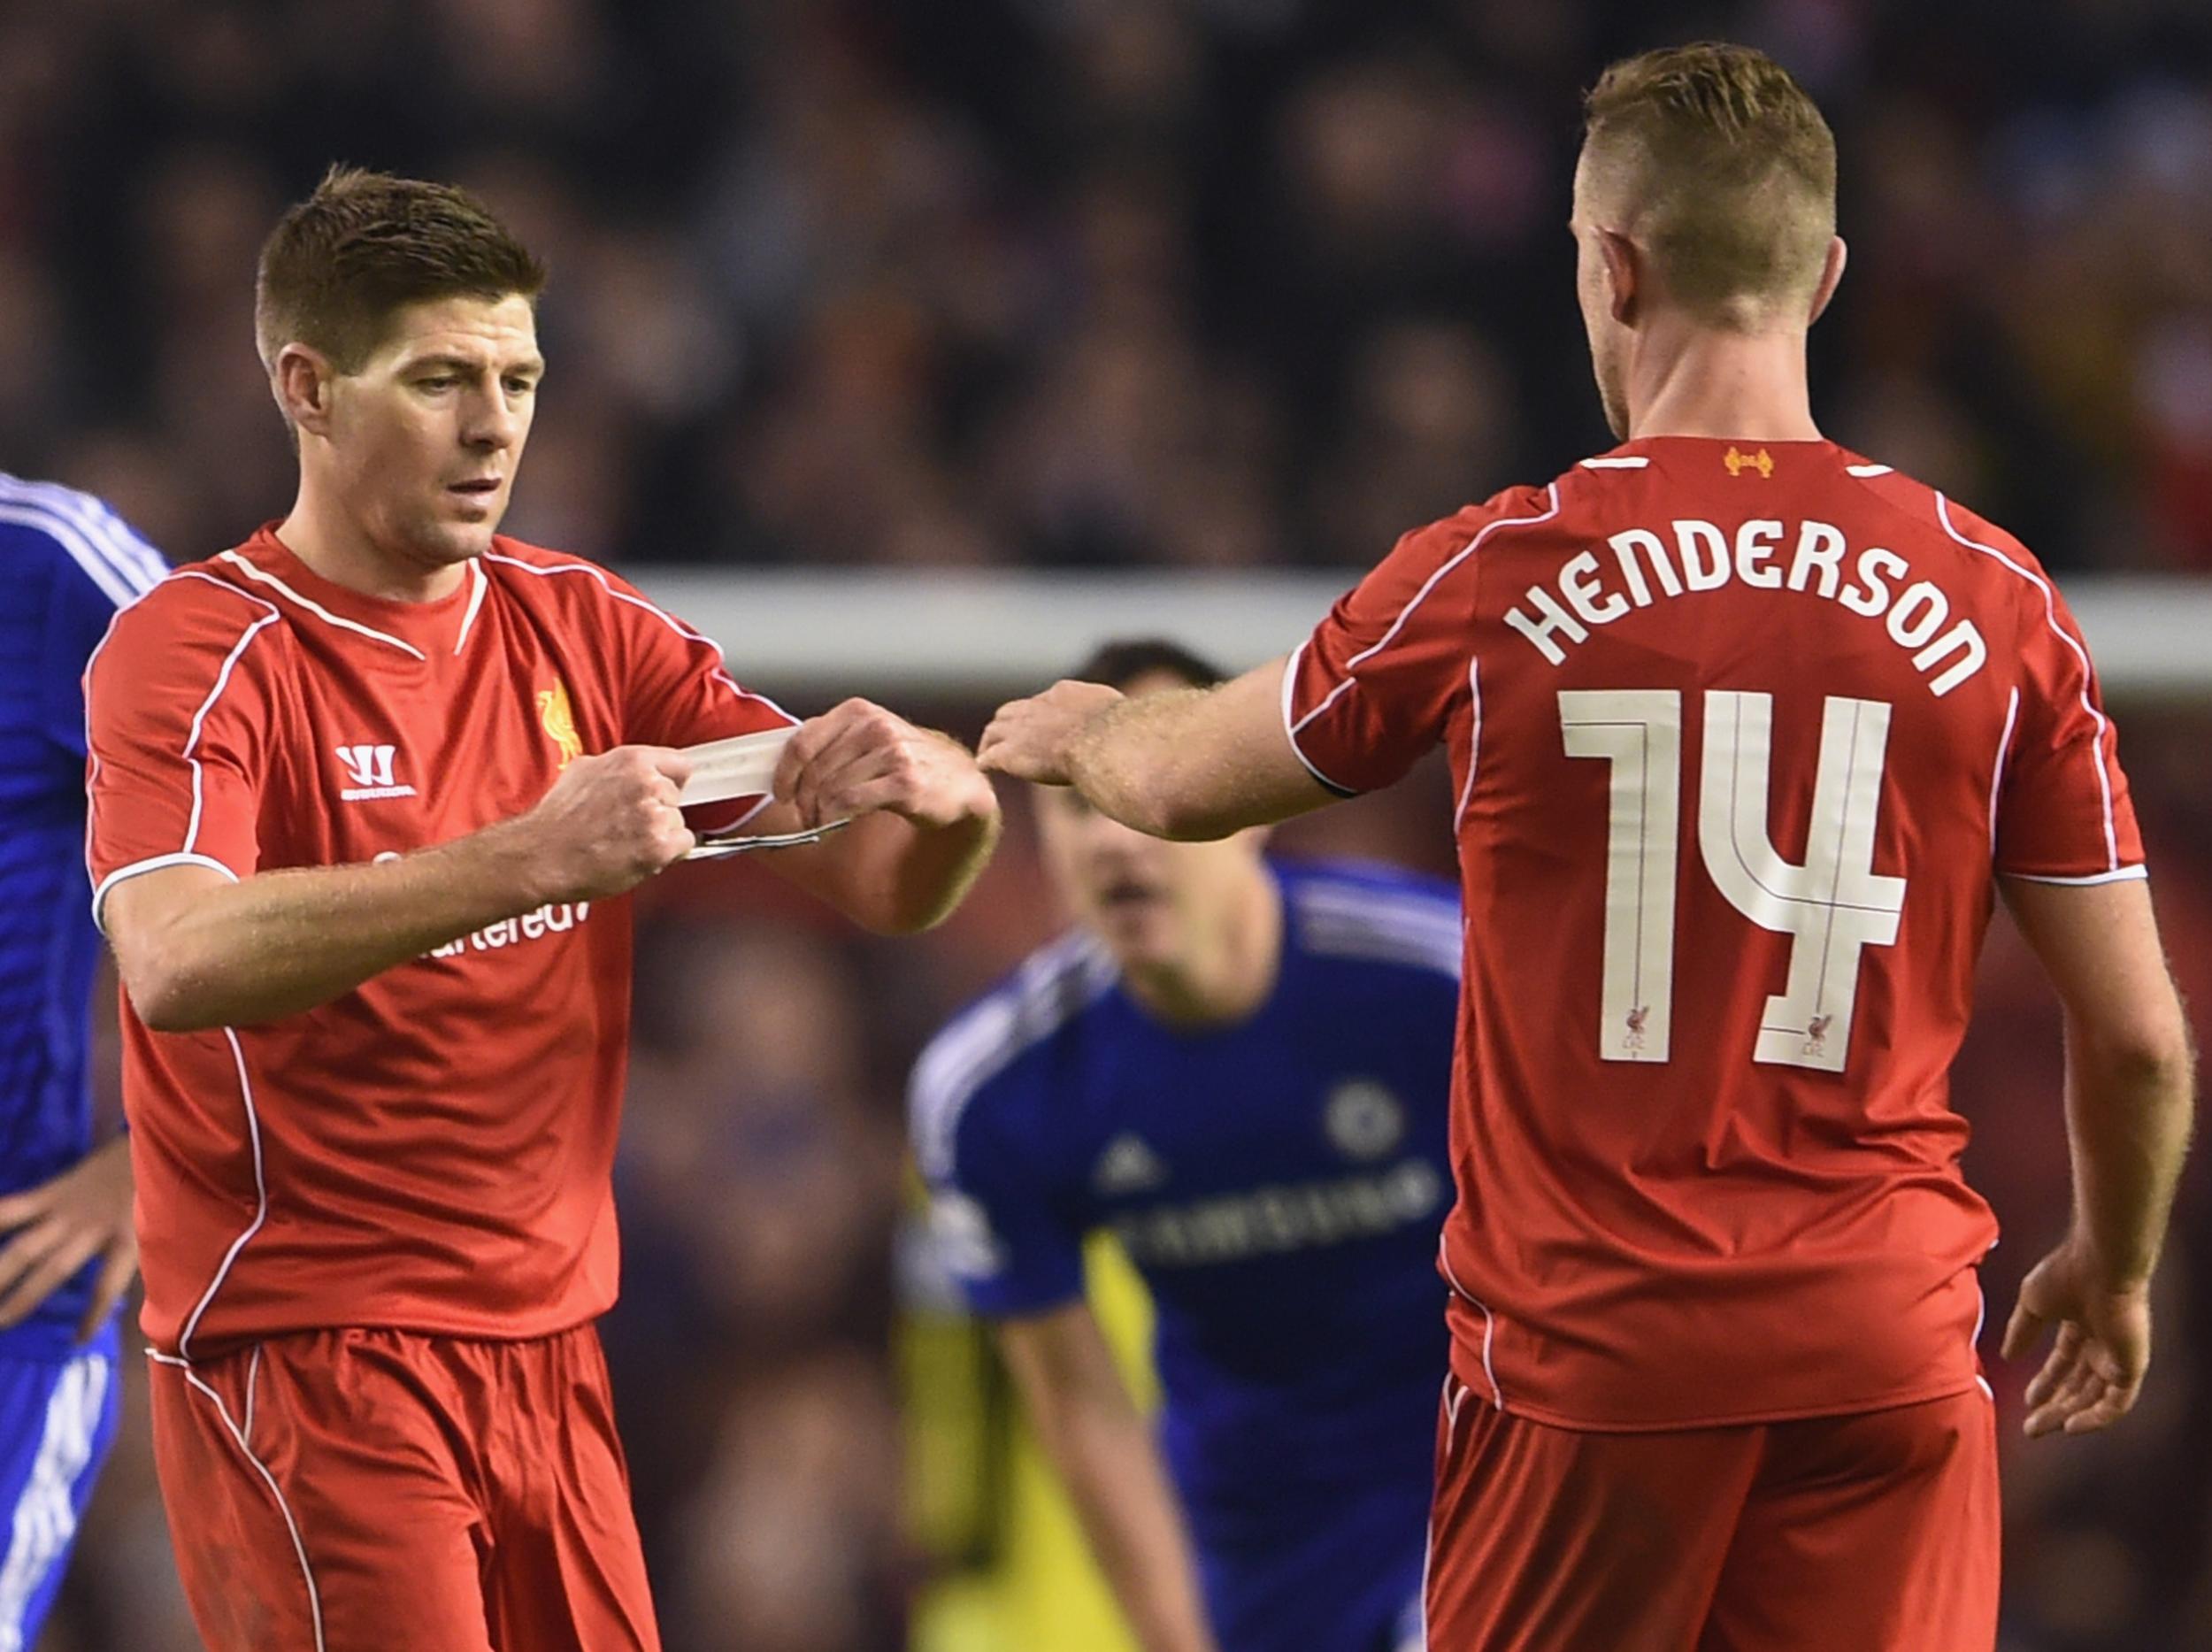 Henderson succeeded Gerrard as Liverpool captain